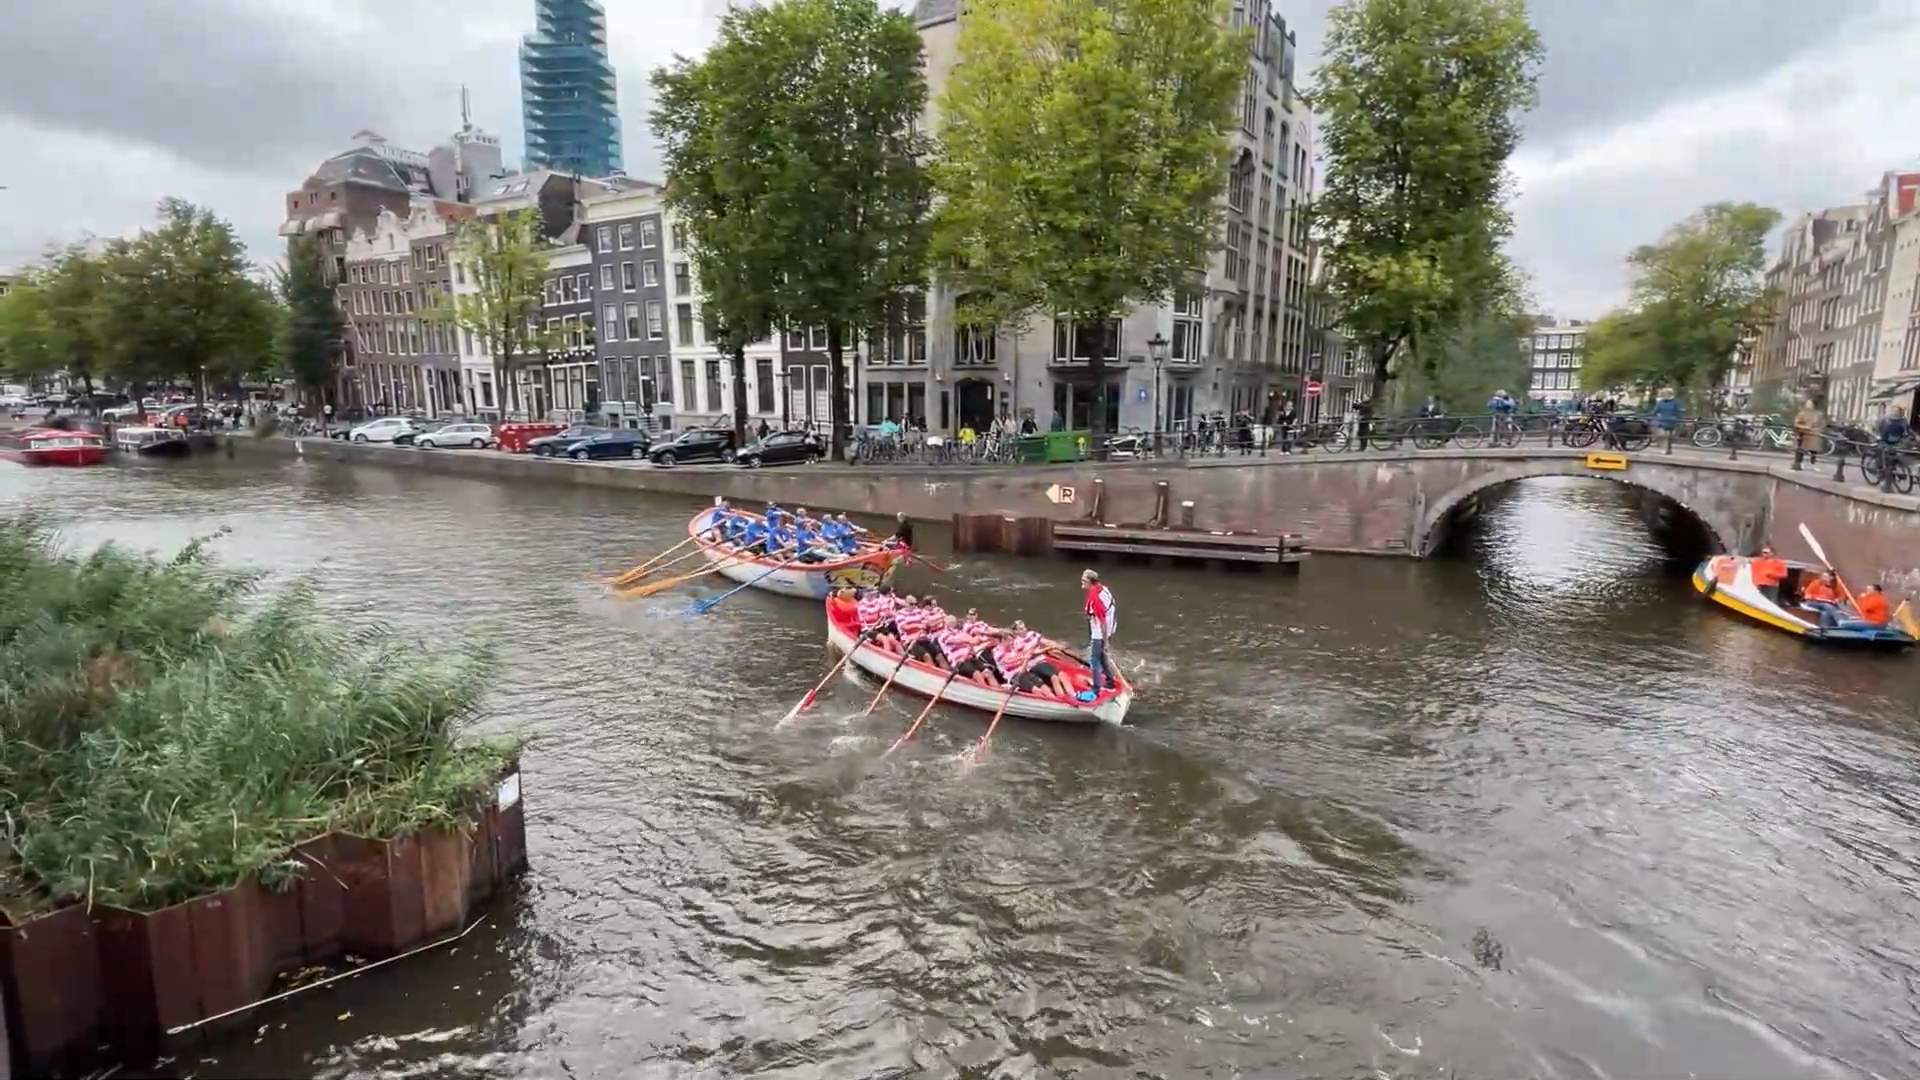 ชมงานแข่ง 'พายเรือ' ในคลองประวัติศาสตร์ของอัมสเตอร์ดัม